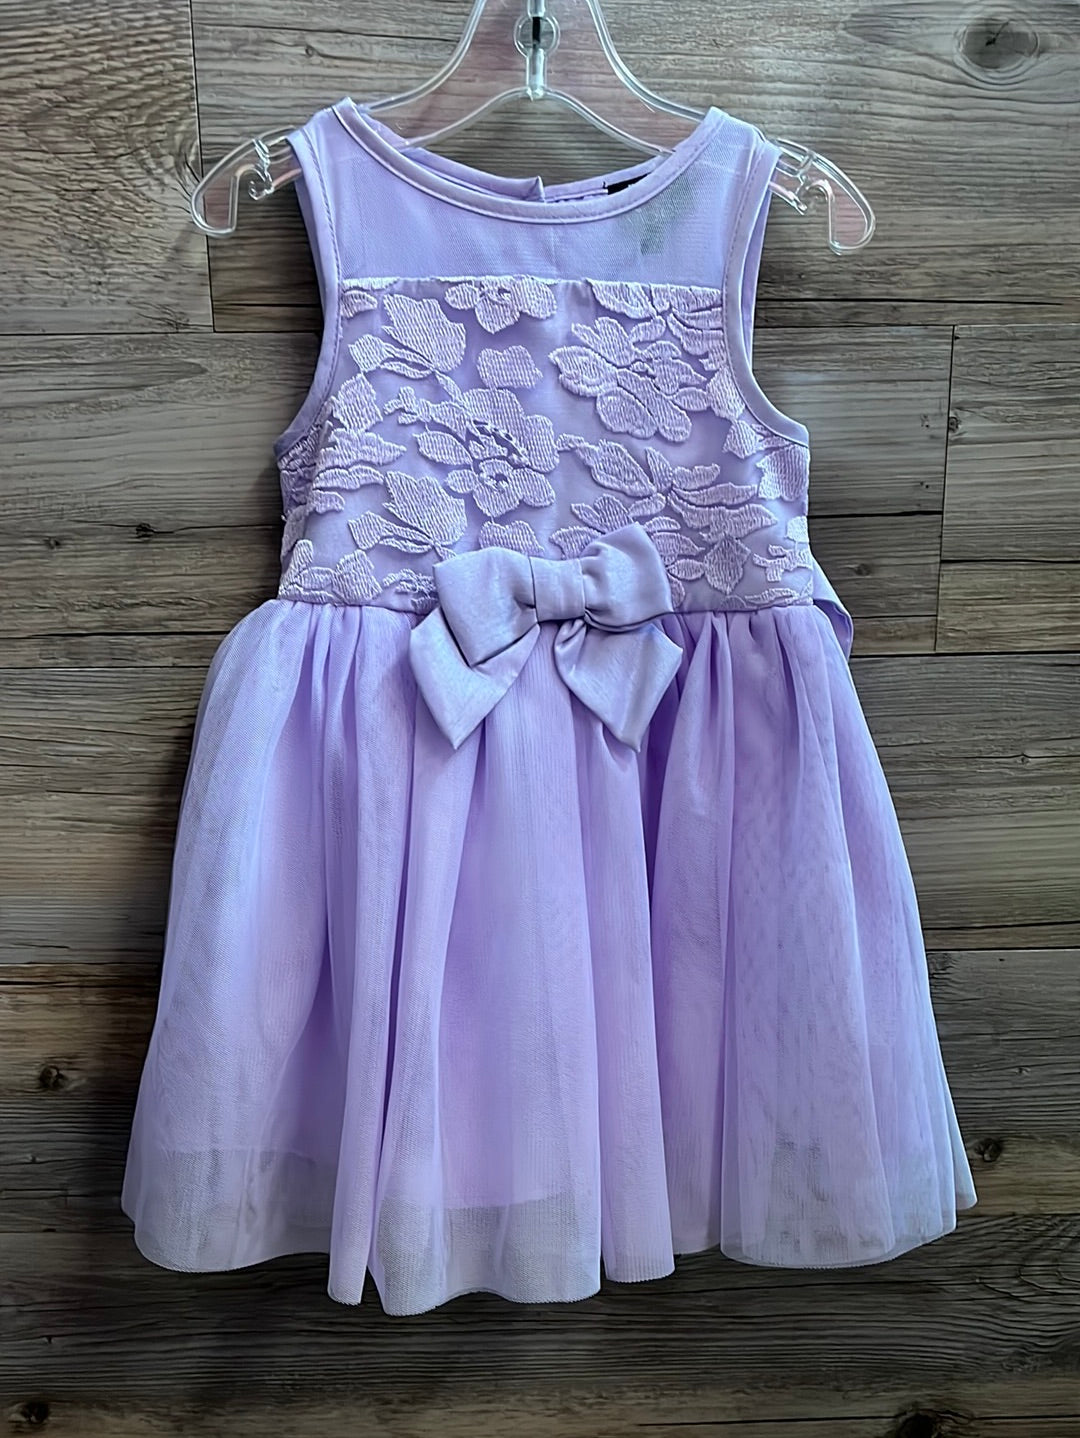 Pink Violet Dress, Size 2T